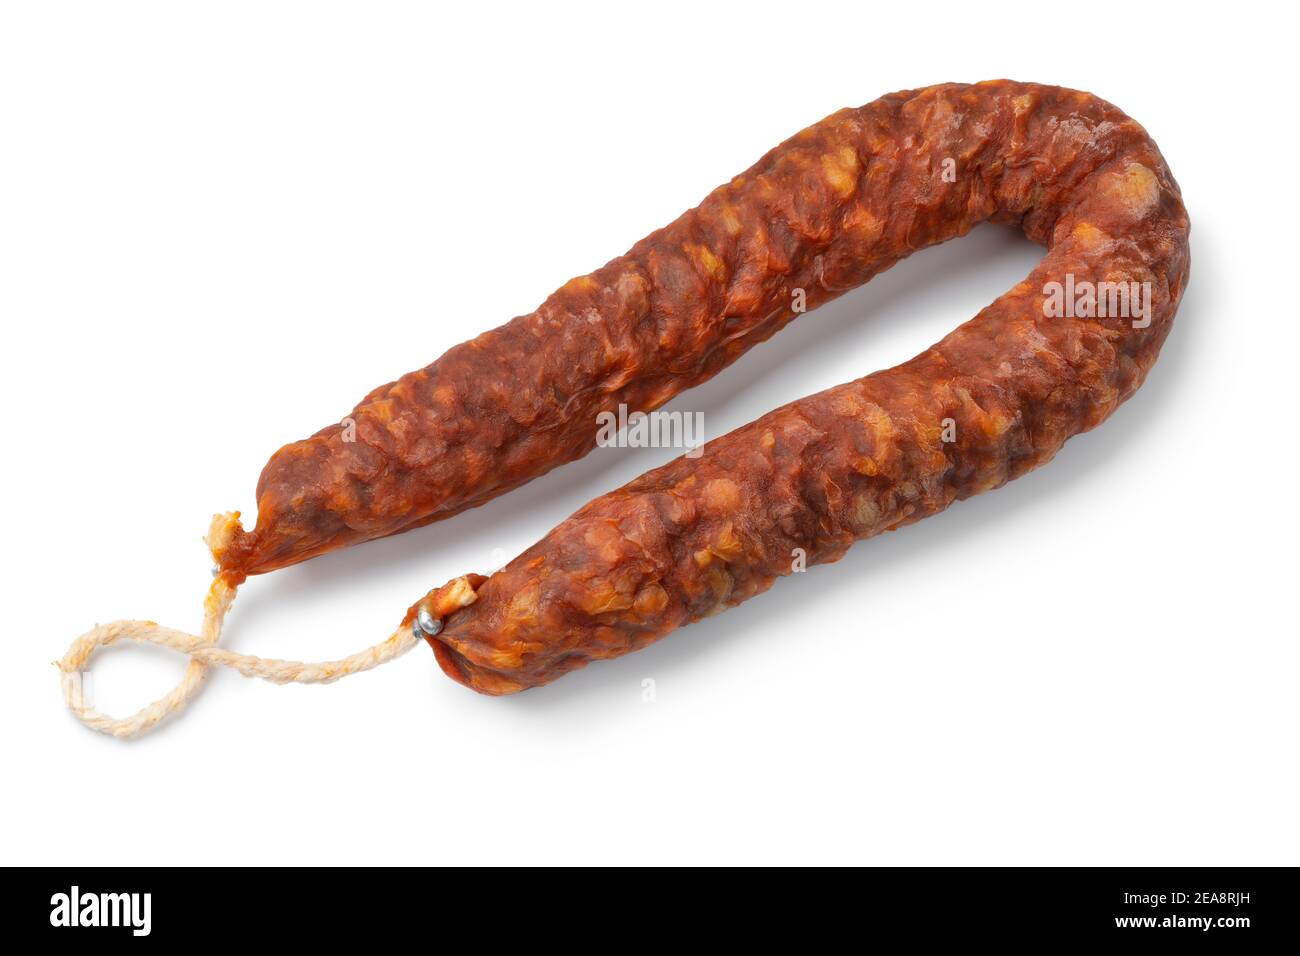 Single Spanish Chorizo saucisse gros plan isolé sur fond blanc Banque D'Images